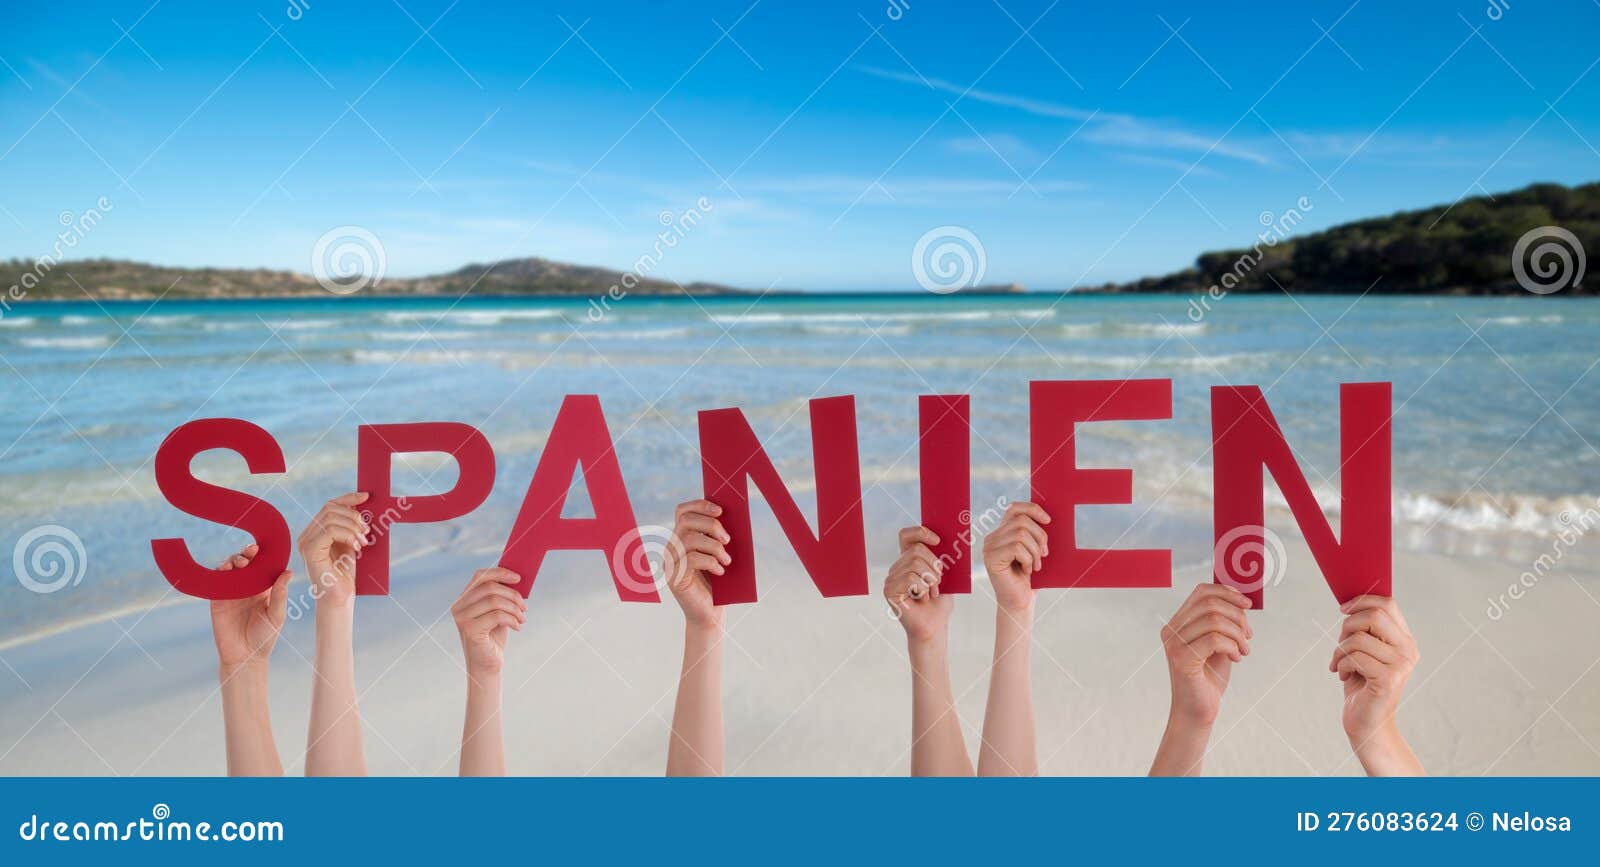 people hands building word spanien means spain, ocean and sea